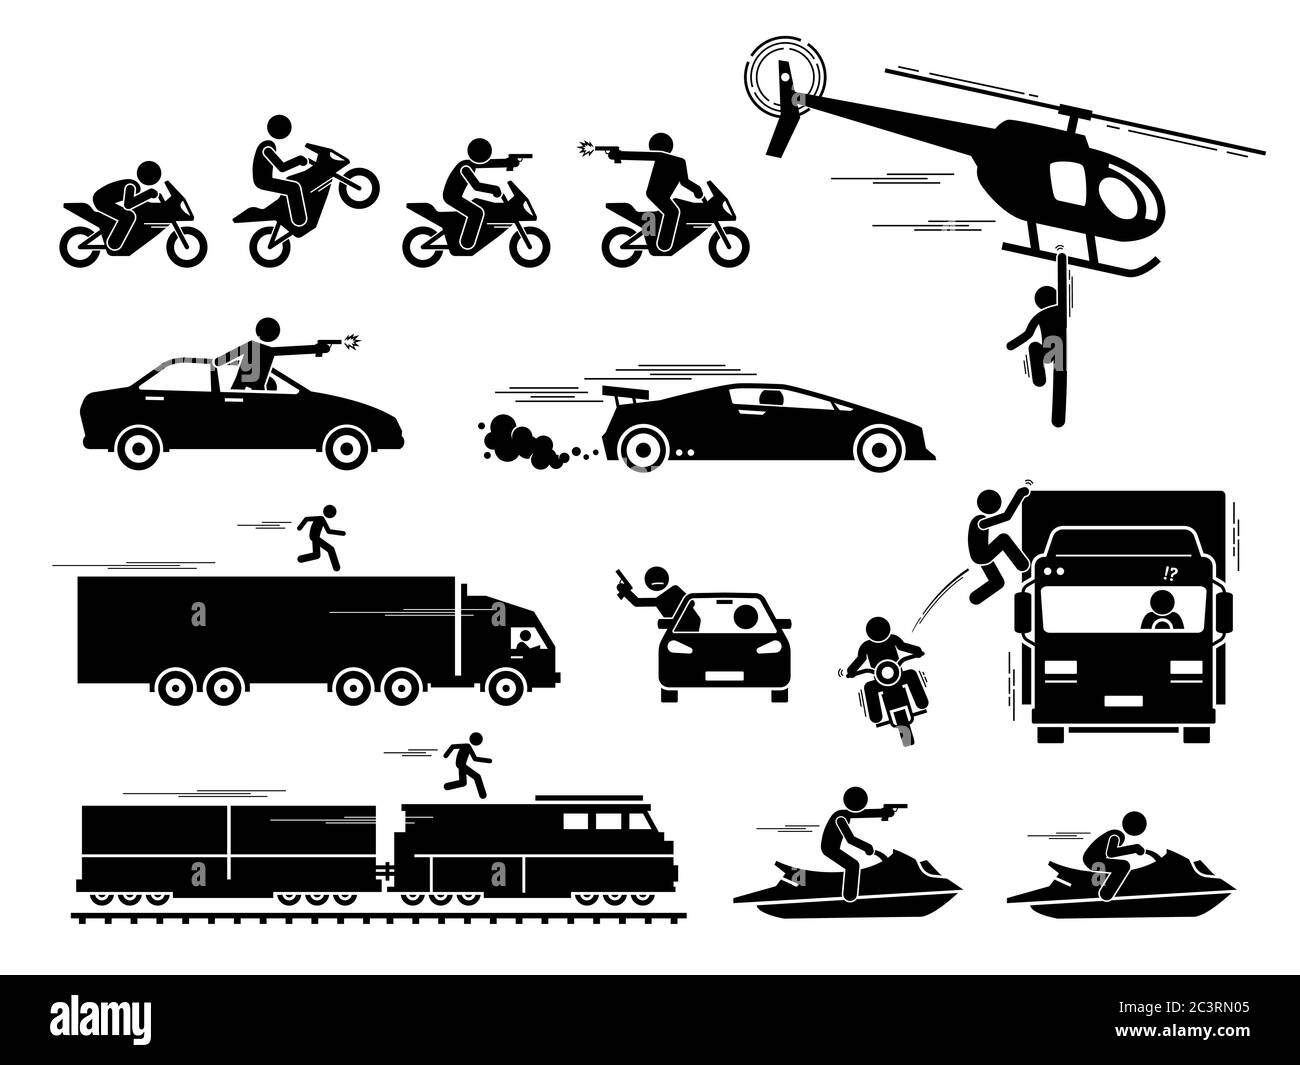 Film Action Held Auto Motorrad Verfolgungsjagd Szene. Vektor von Menschen jagen und schießen mit Pistole auf Auto, Motorrad und Jet-Ski. Stunt Mann hängt auf Hel Stock Vektor